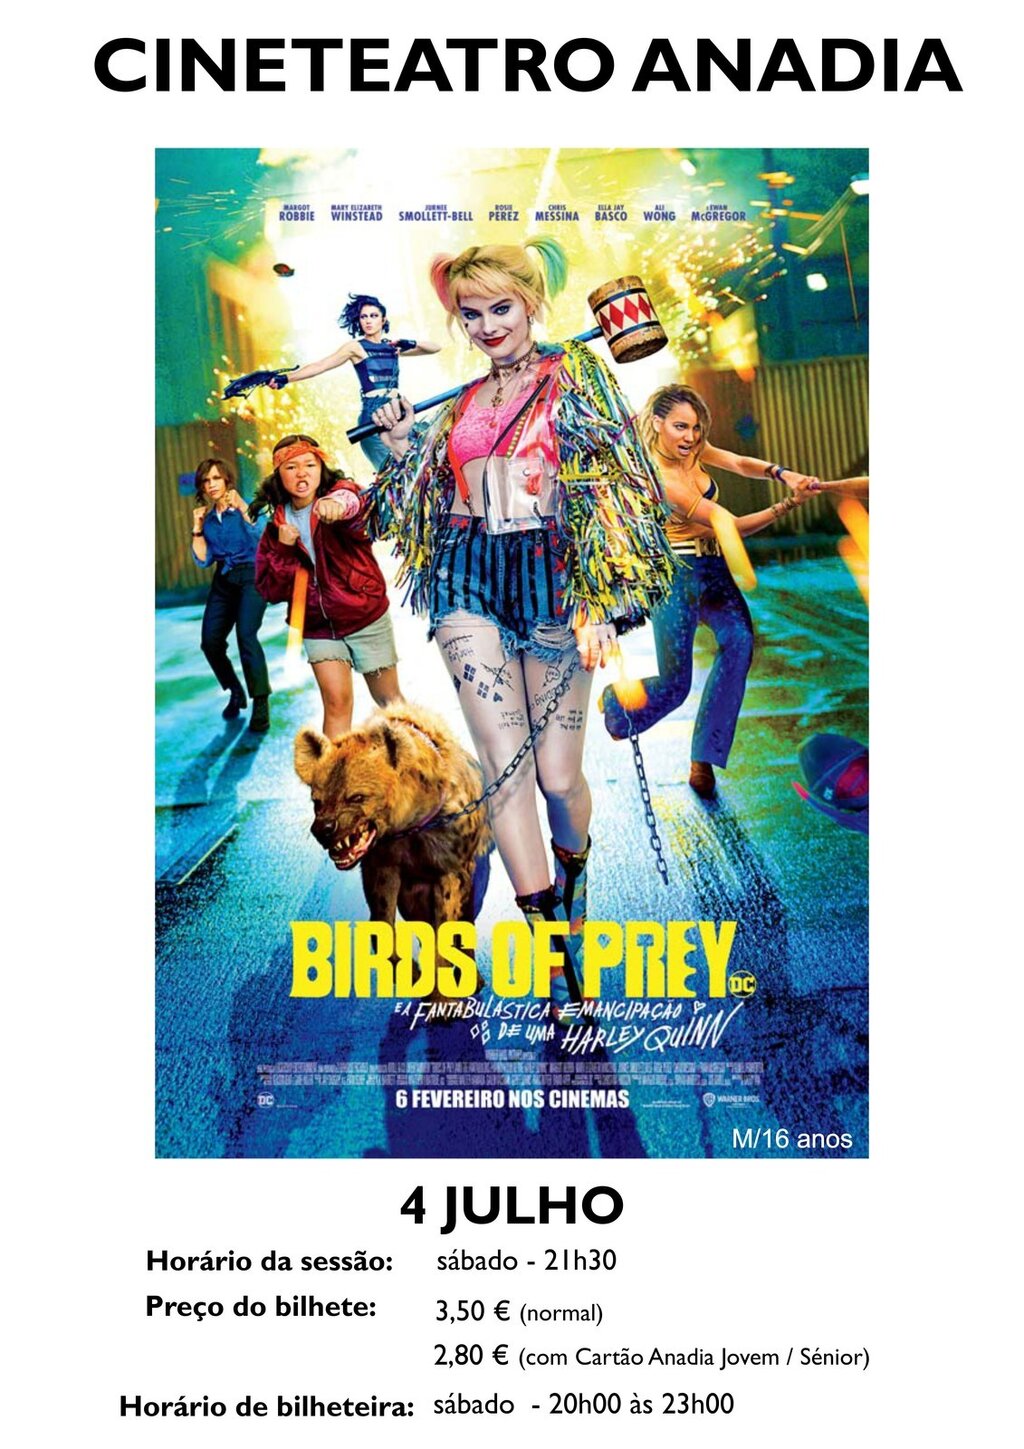 "Birds of Prey (e a fantabulástica emancipação de uma Harley Quinn)", M16